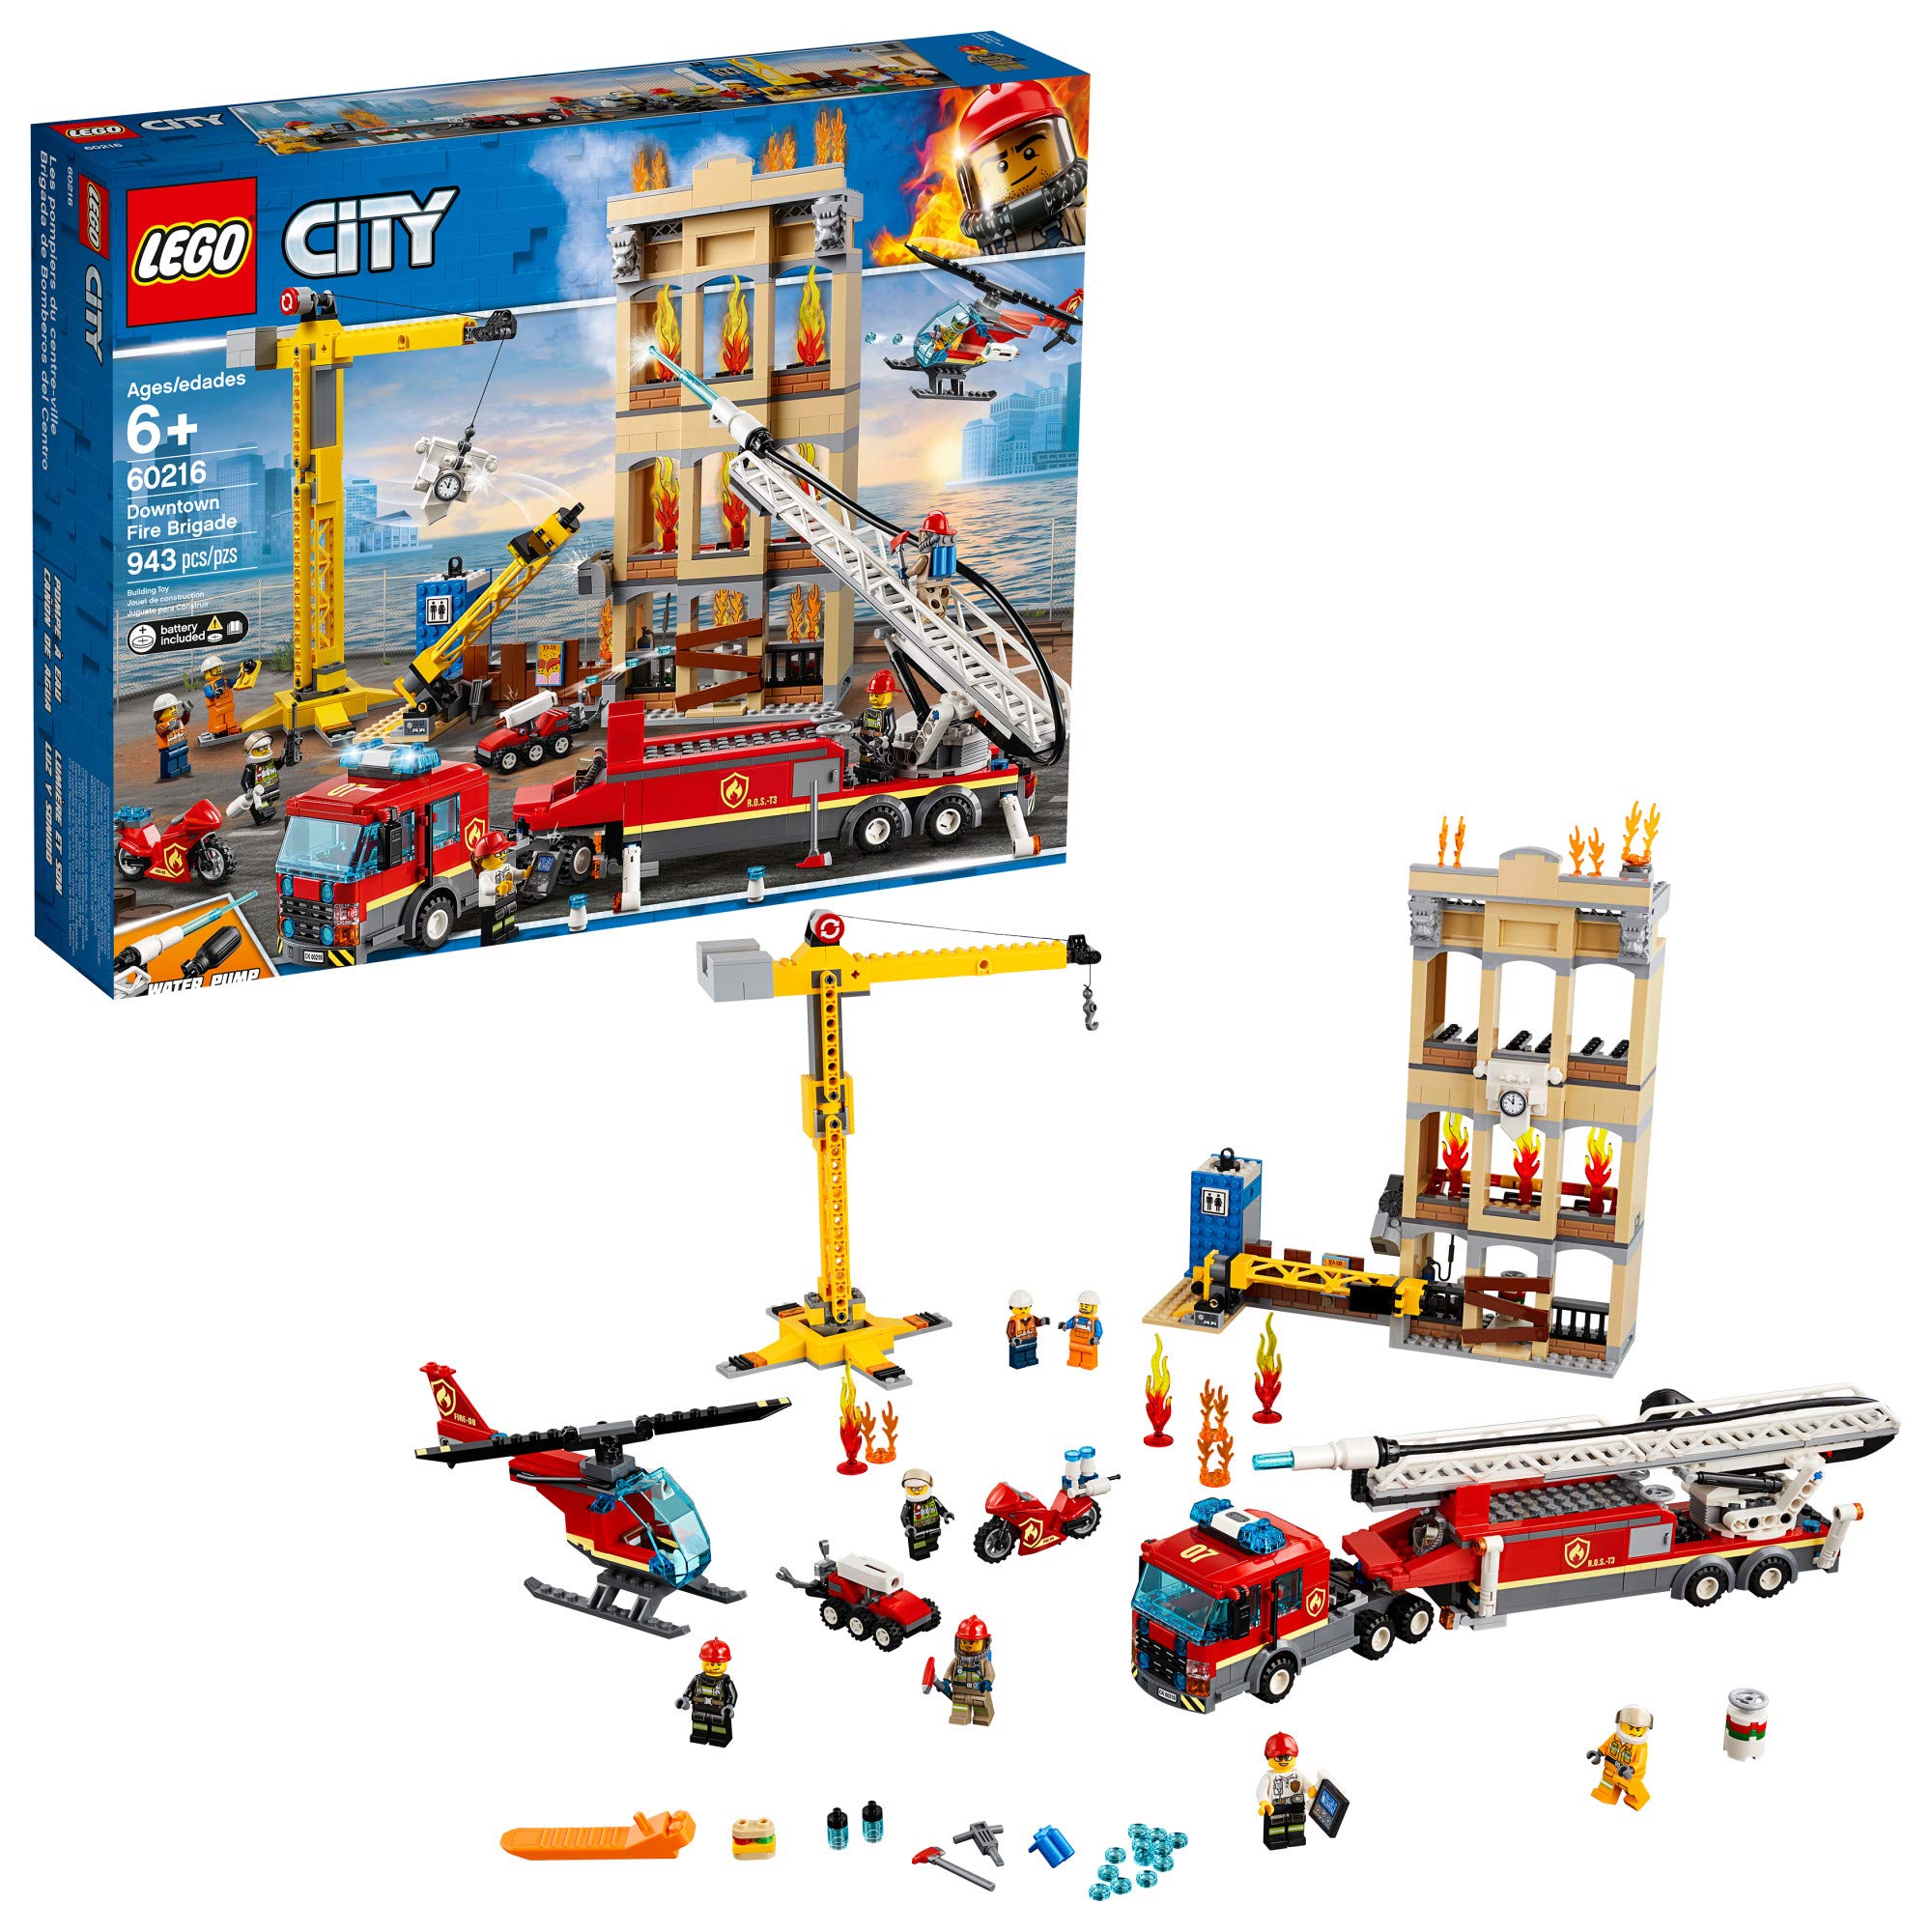 レゴ LEGO City Downtown Fire Brigade 60216 Building Kit 943 Pieces 送料無料